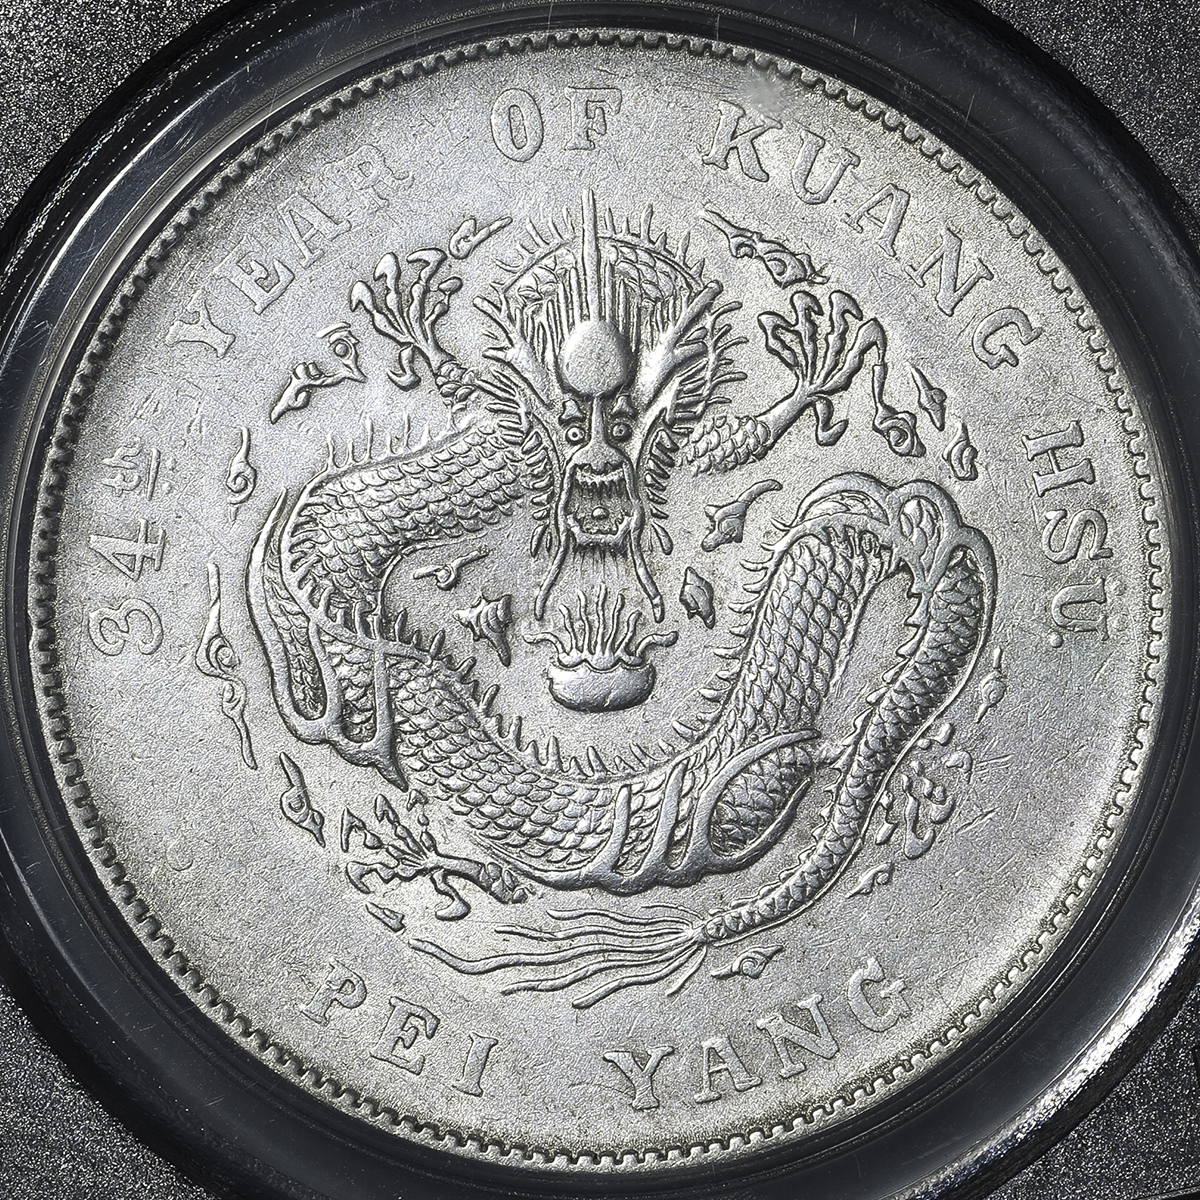 直隷省(北洋造) Chihli 光緒元宝 七銭二分(Dollar) 銀貨 光緒34年(1908